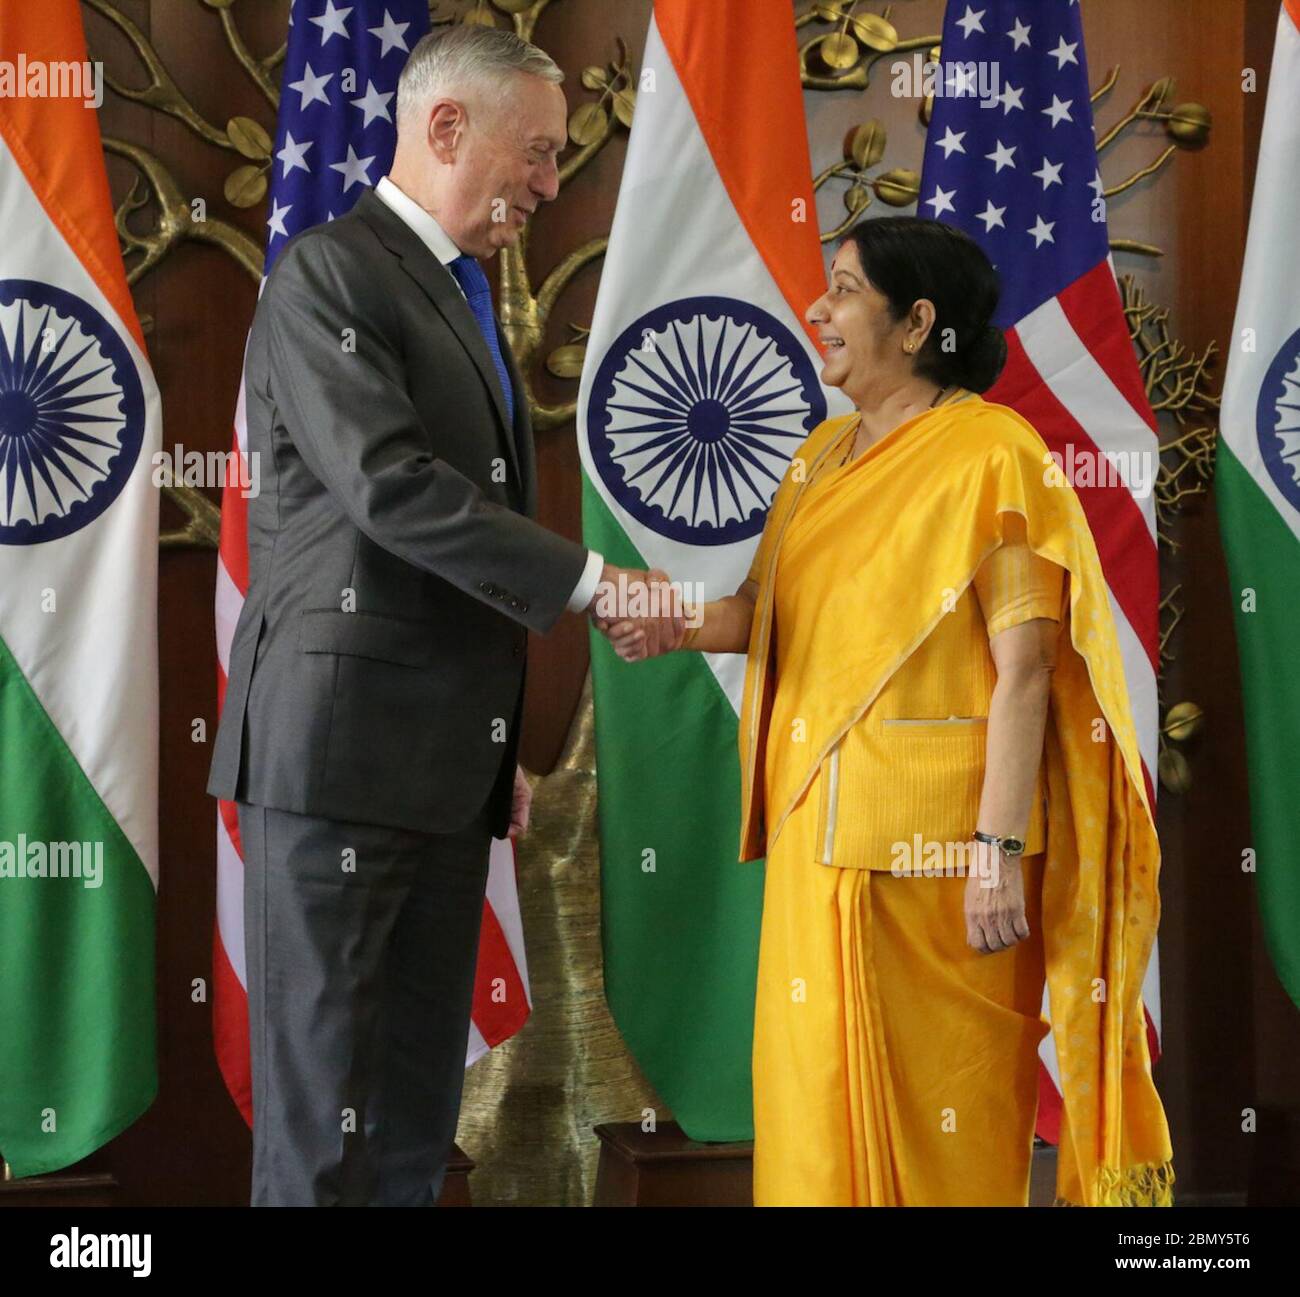 Secretario Mattis con el Ministro de Asuntos Exteriores de la India Swaraj en el diálogo Estados Unidos-India 2+2 el Secretario de Defensa James Mattis se reúne con el Ministro de Asuntos Exteriores de la India Sushma Swaraj en el diálogo Estados Unidos-India 2+2 en Nueva Delhi, India, el 6 de septiembre de 2018. Foto de stock